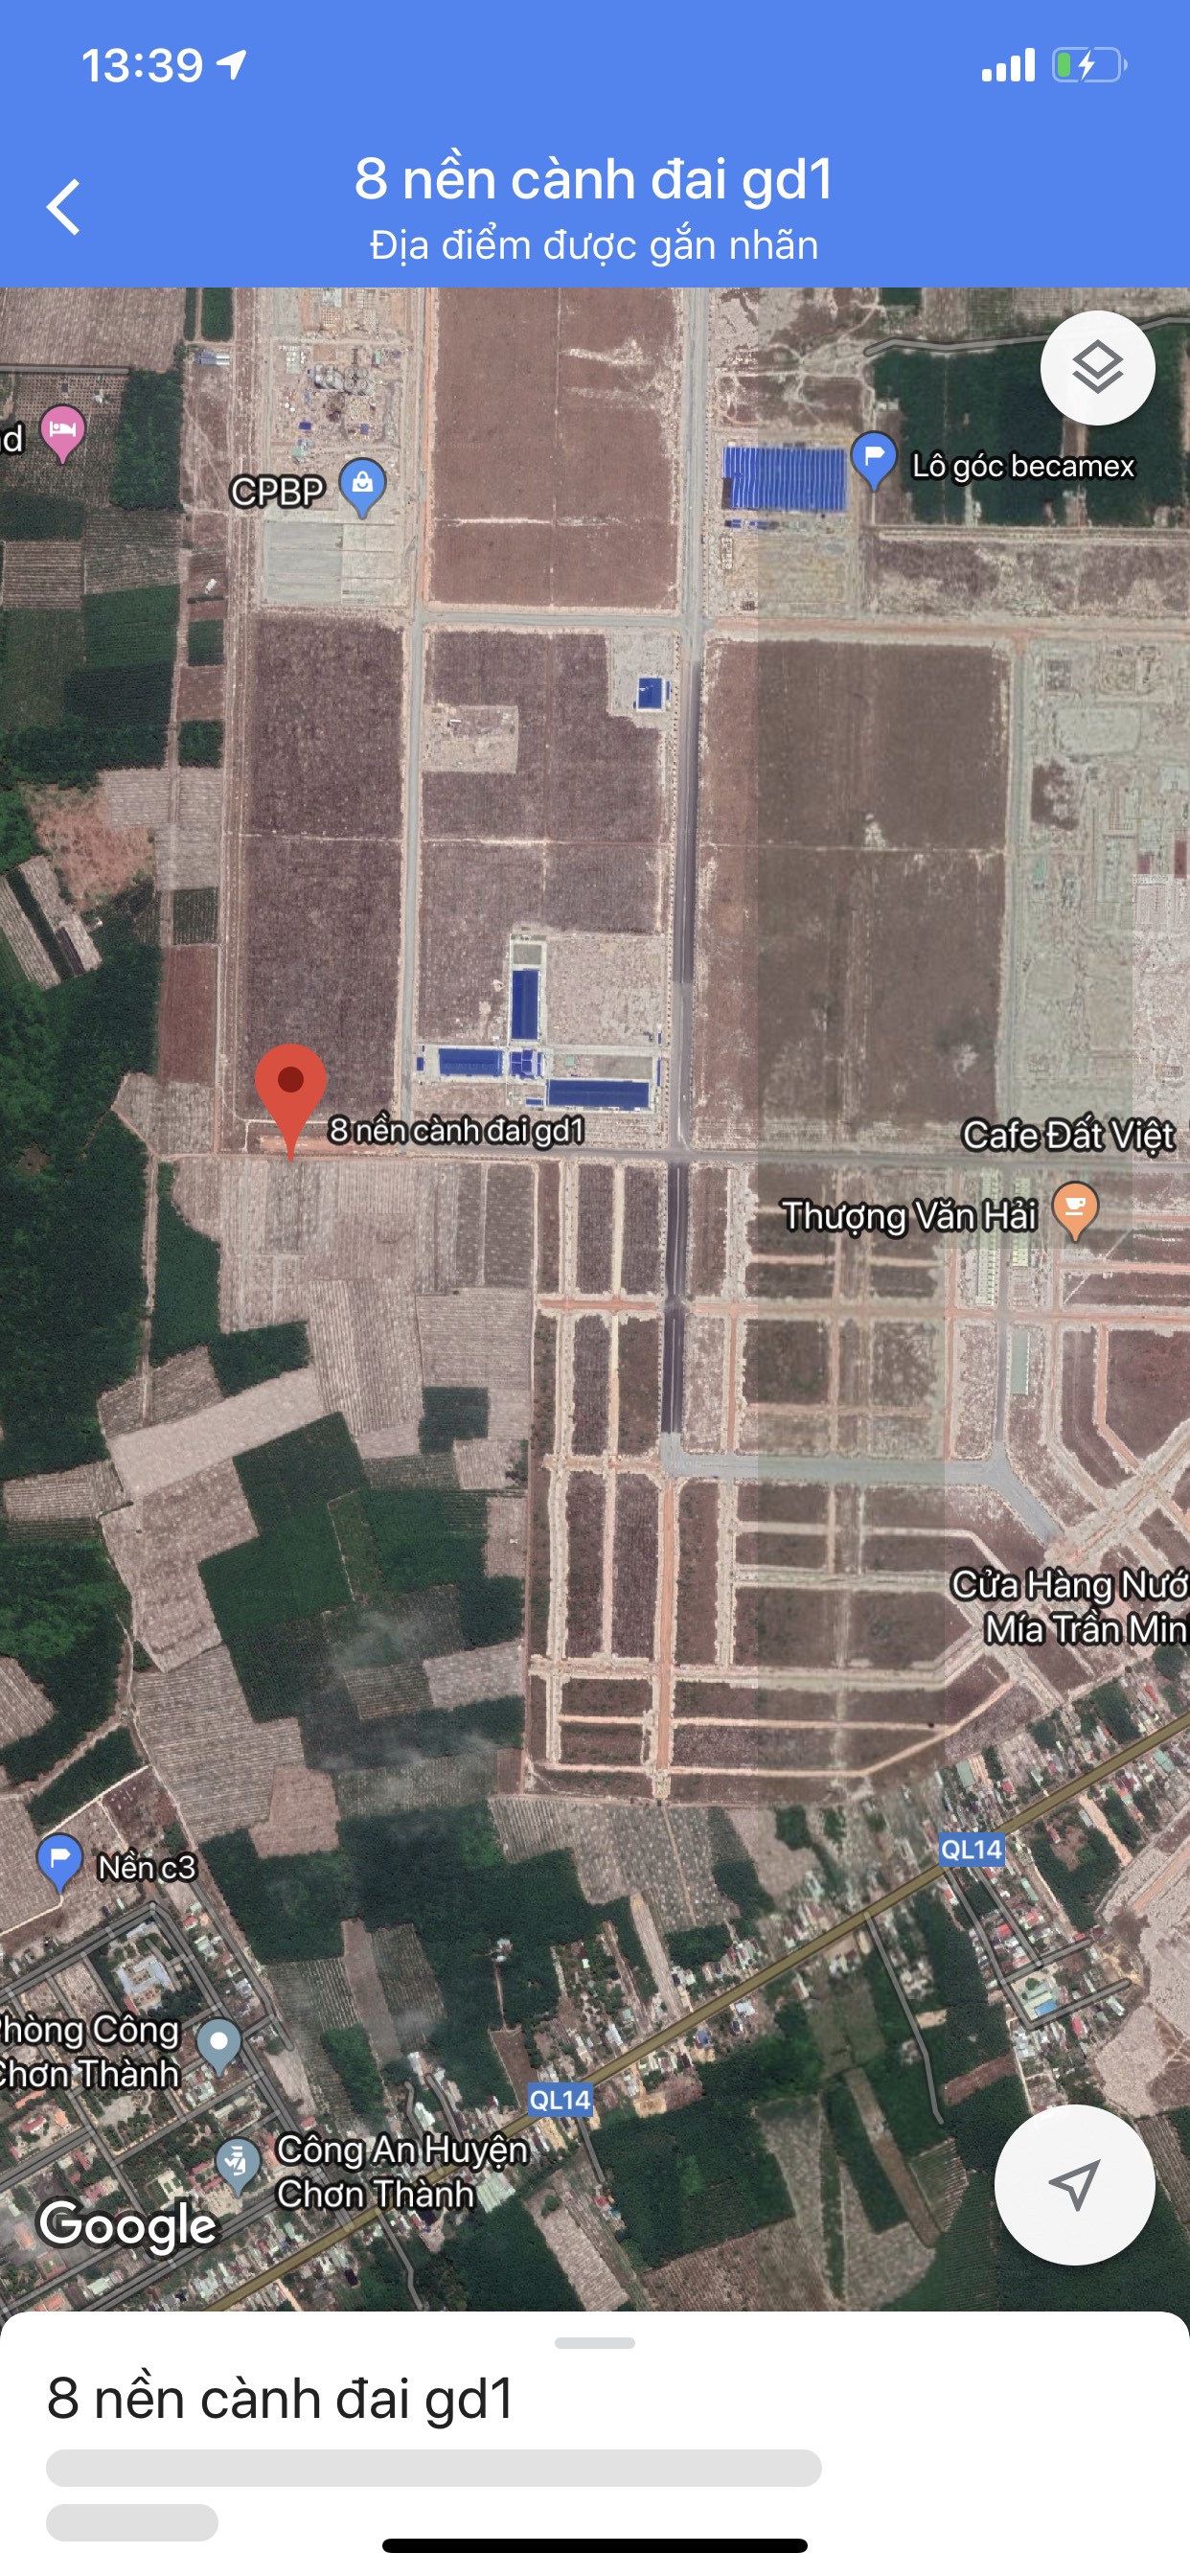 Cần bán lô đất đói diện KCN Becamex Bình Phước, đã có sổ hồng, giá rẻ.